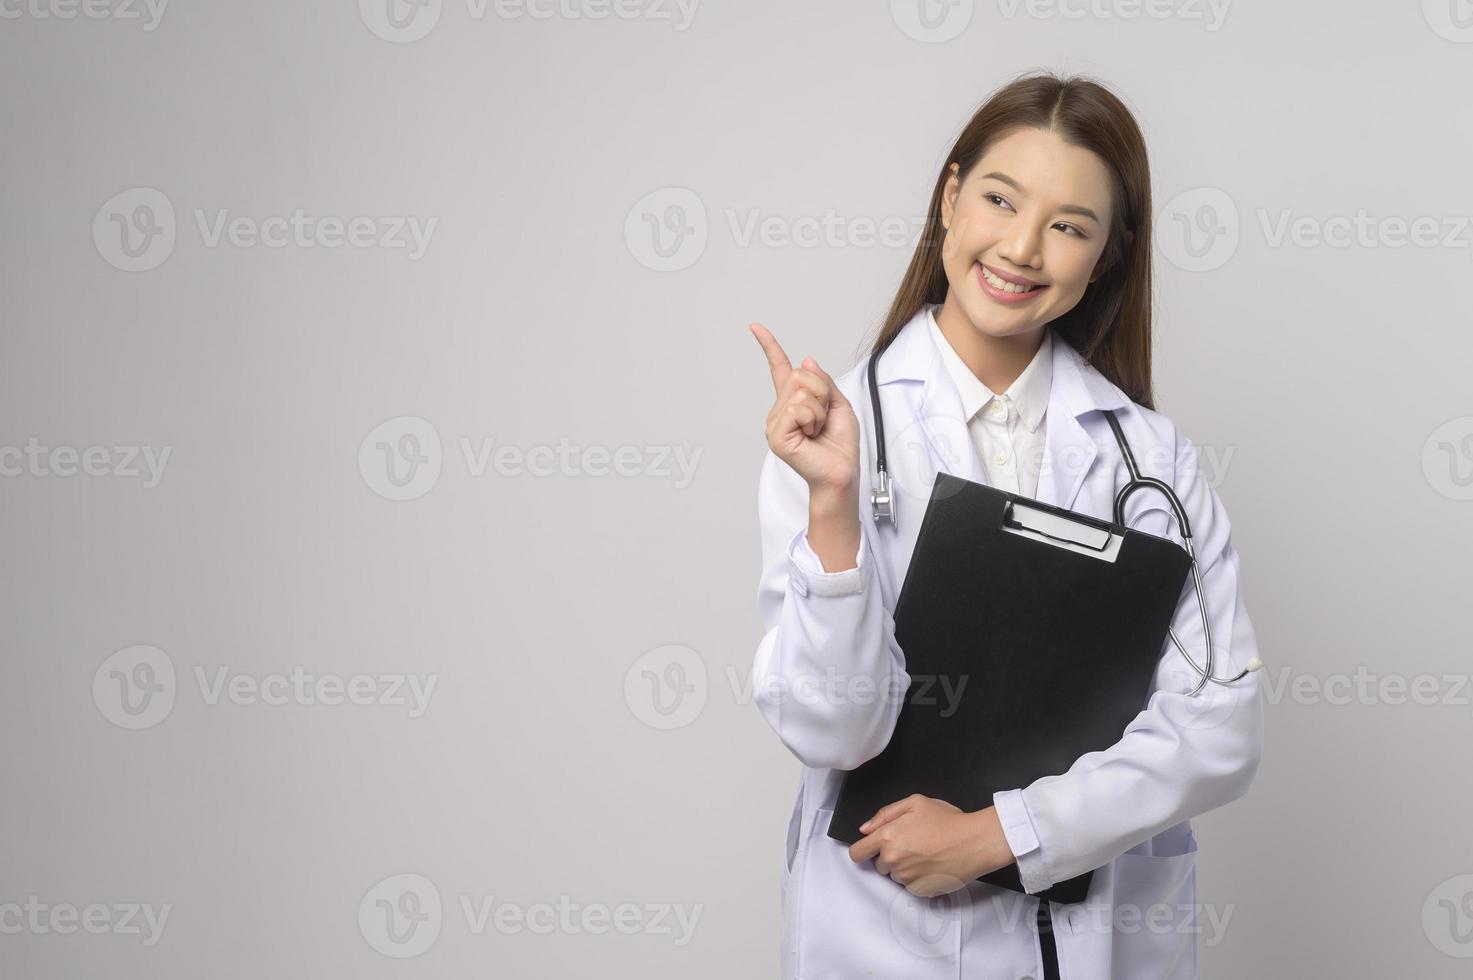 retrato do médico confiante feminino sobre o conceito de estúdio, saúde e tecnologia médica de fundo branco. foto